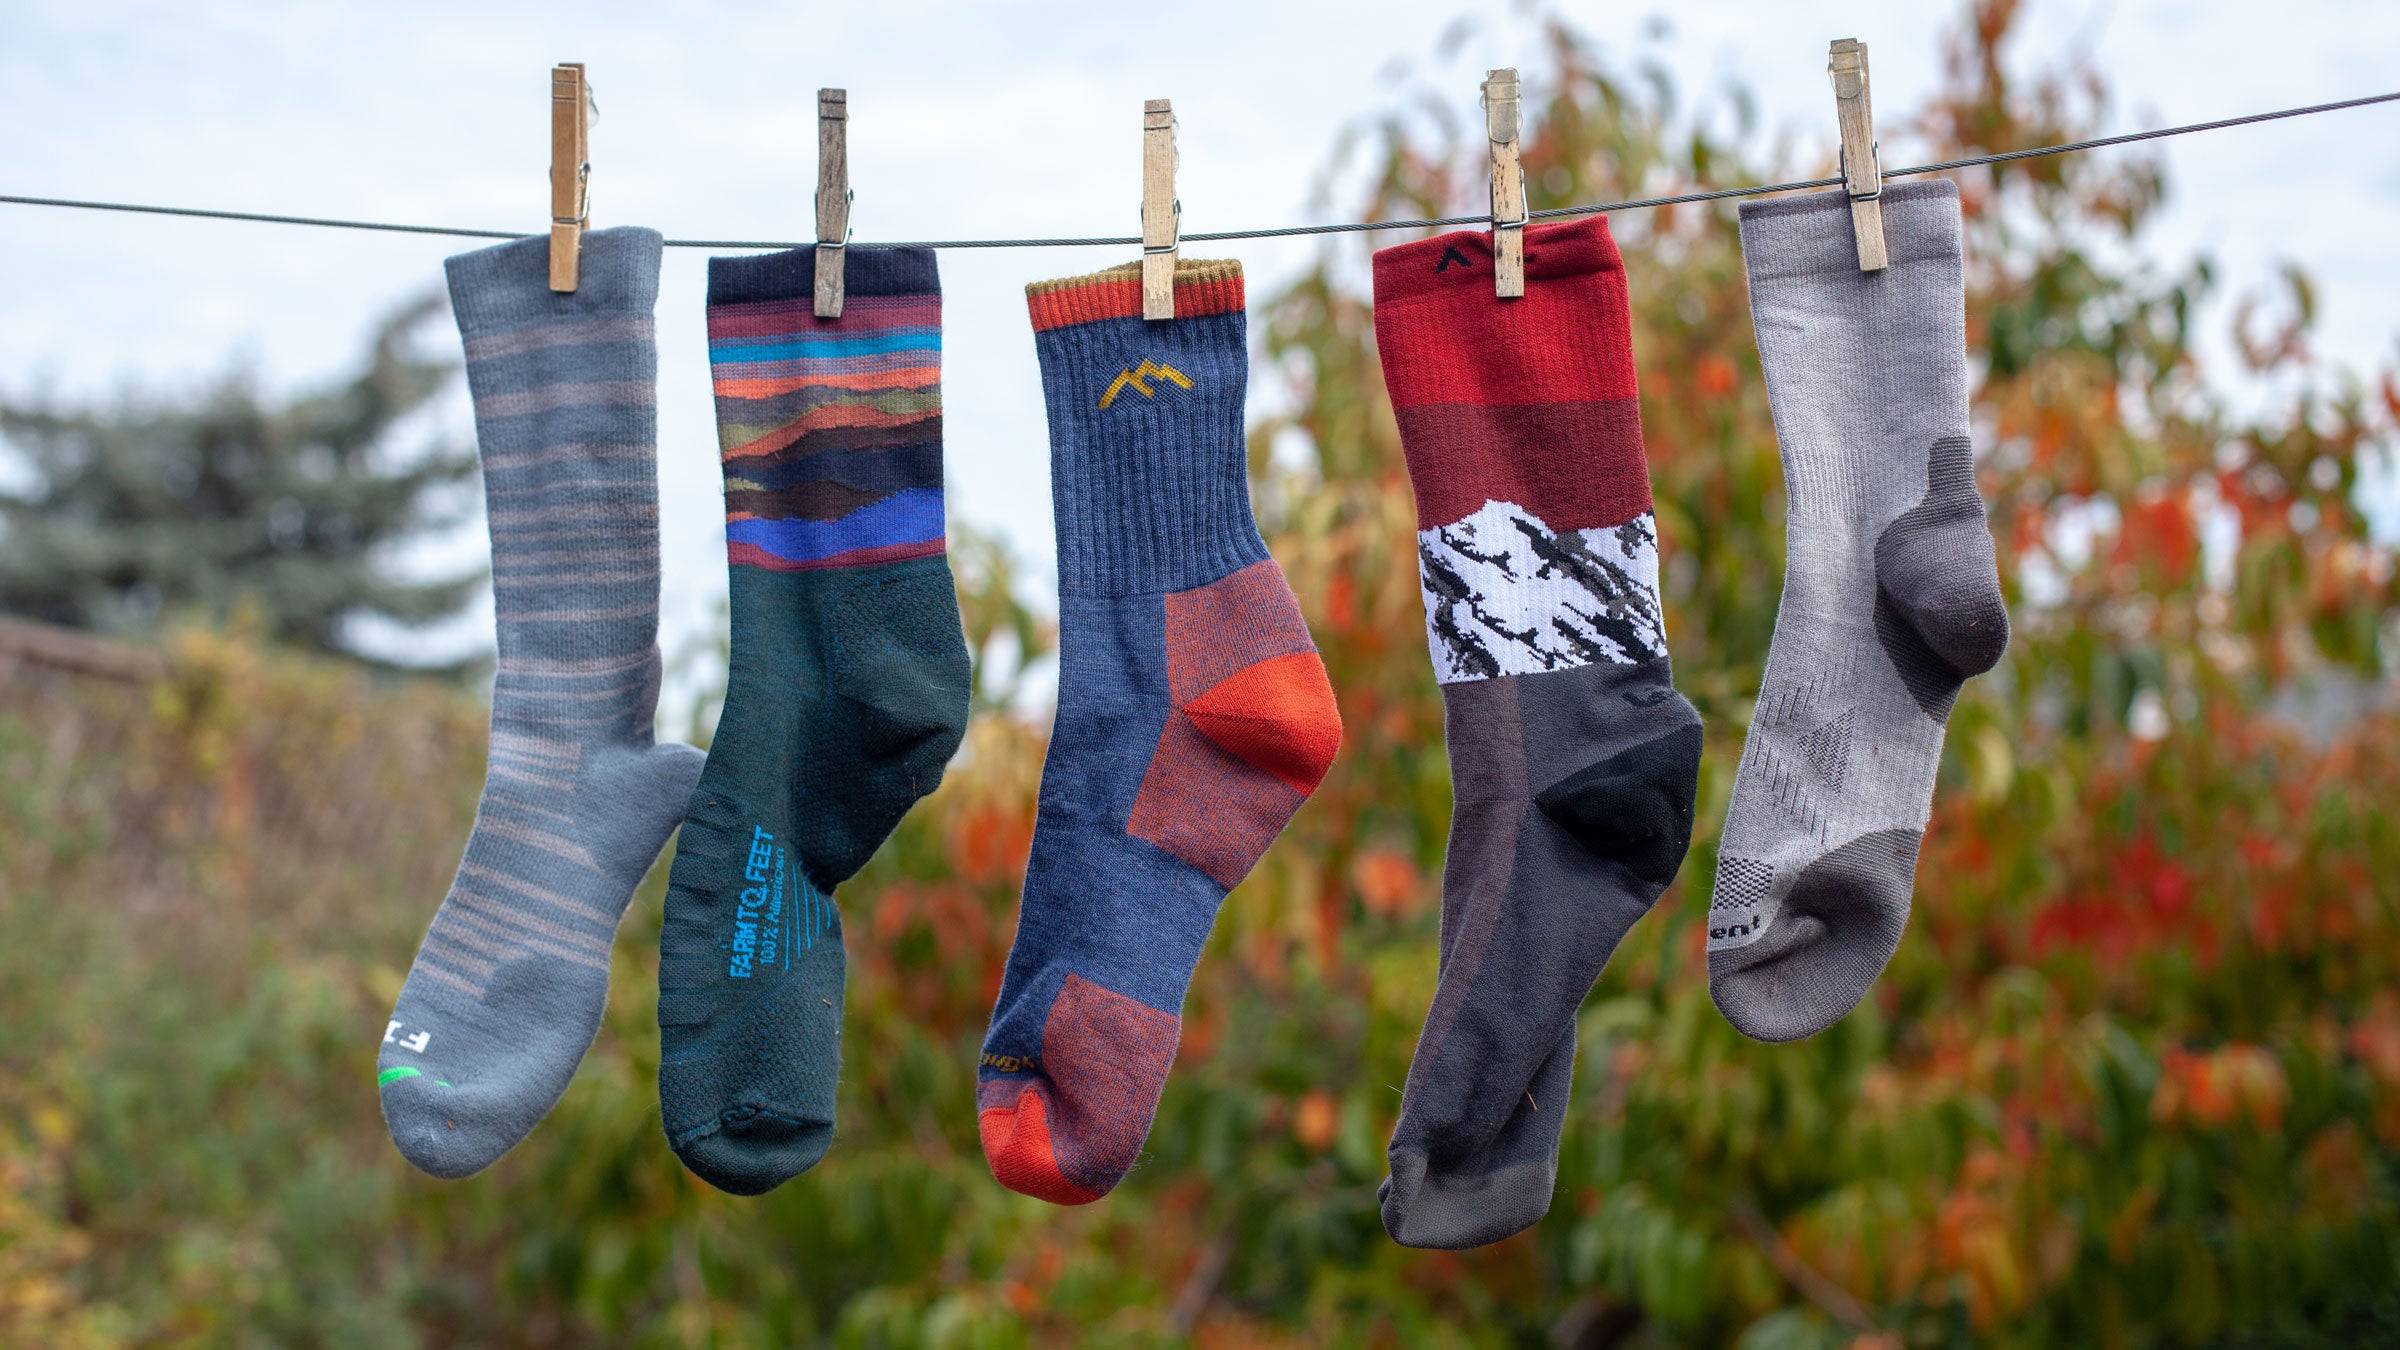 https://cdn.outsideonline.com/wp-content/uploads/2018/10/29/clothes-line-socks_h.jpg